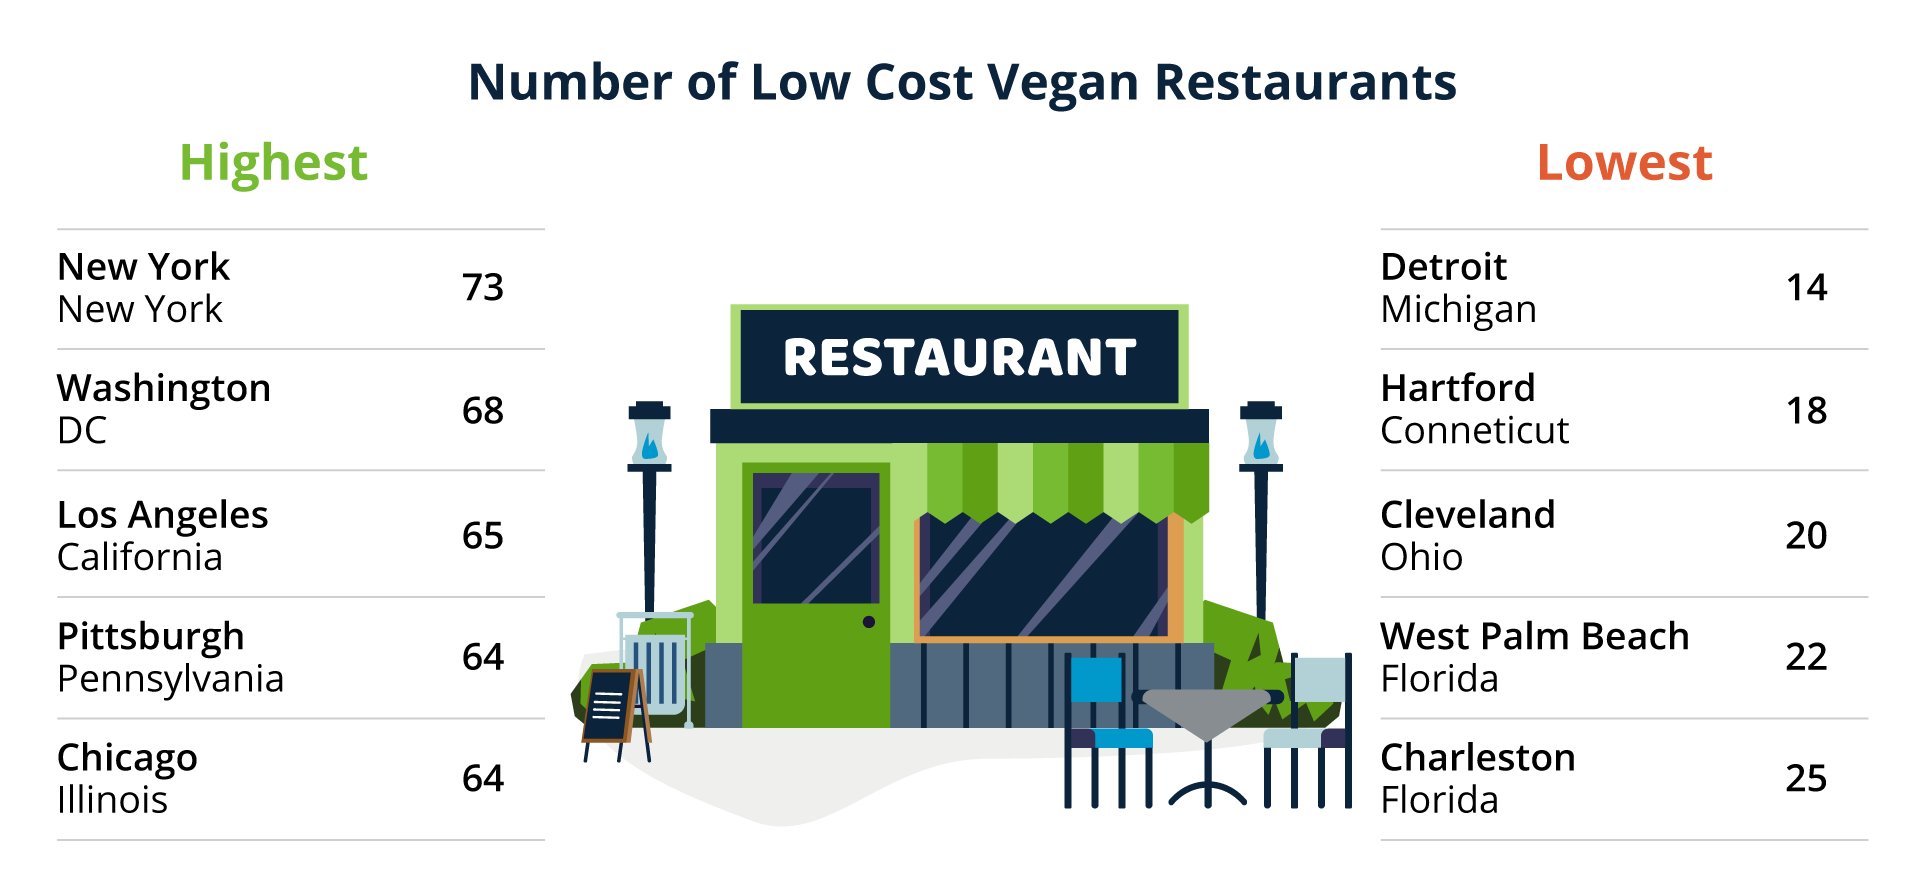 Number of Low Cost Vegan Restaurants